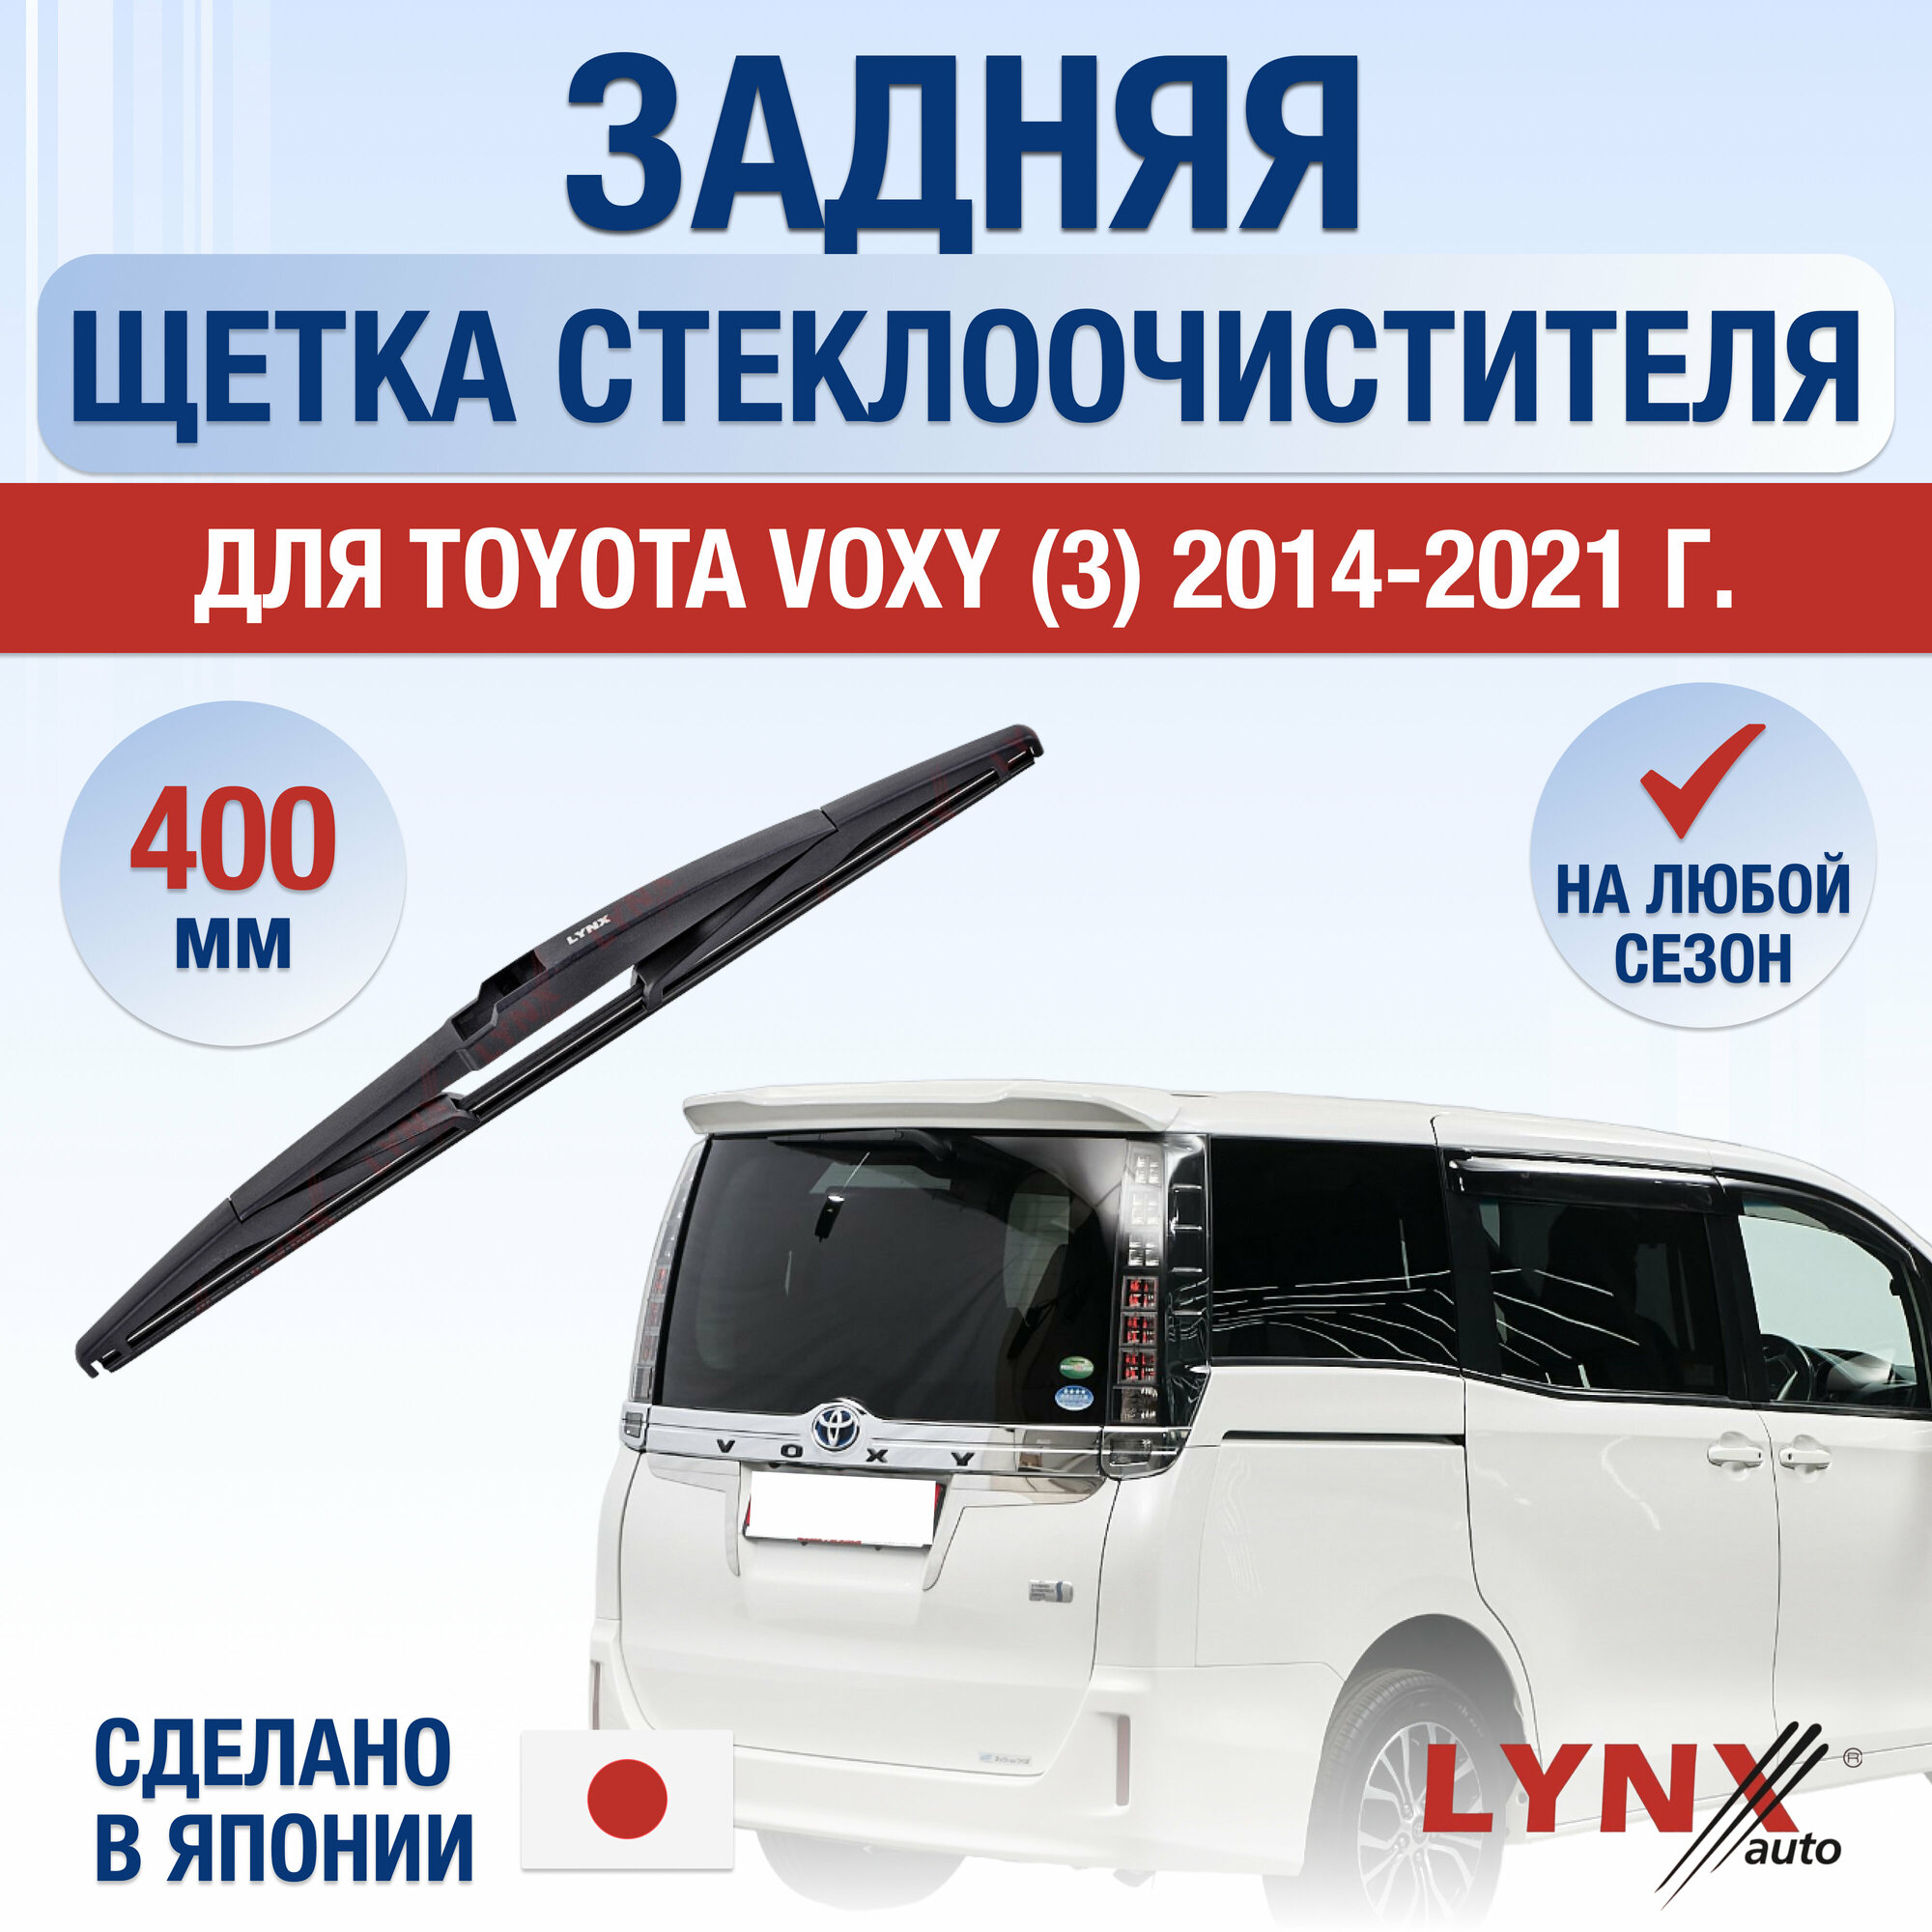 Задняя щетка стеклоочистителя для Toyota Voxy 3 / 2014 2015 2016 2017 2018 2019 2020 2021 / Задний дворник 400 мм Тойота Вокси